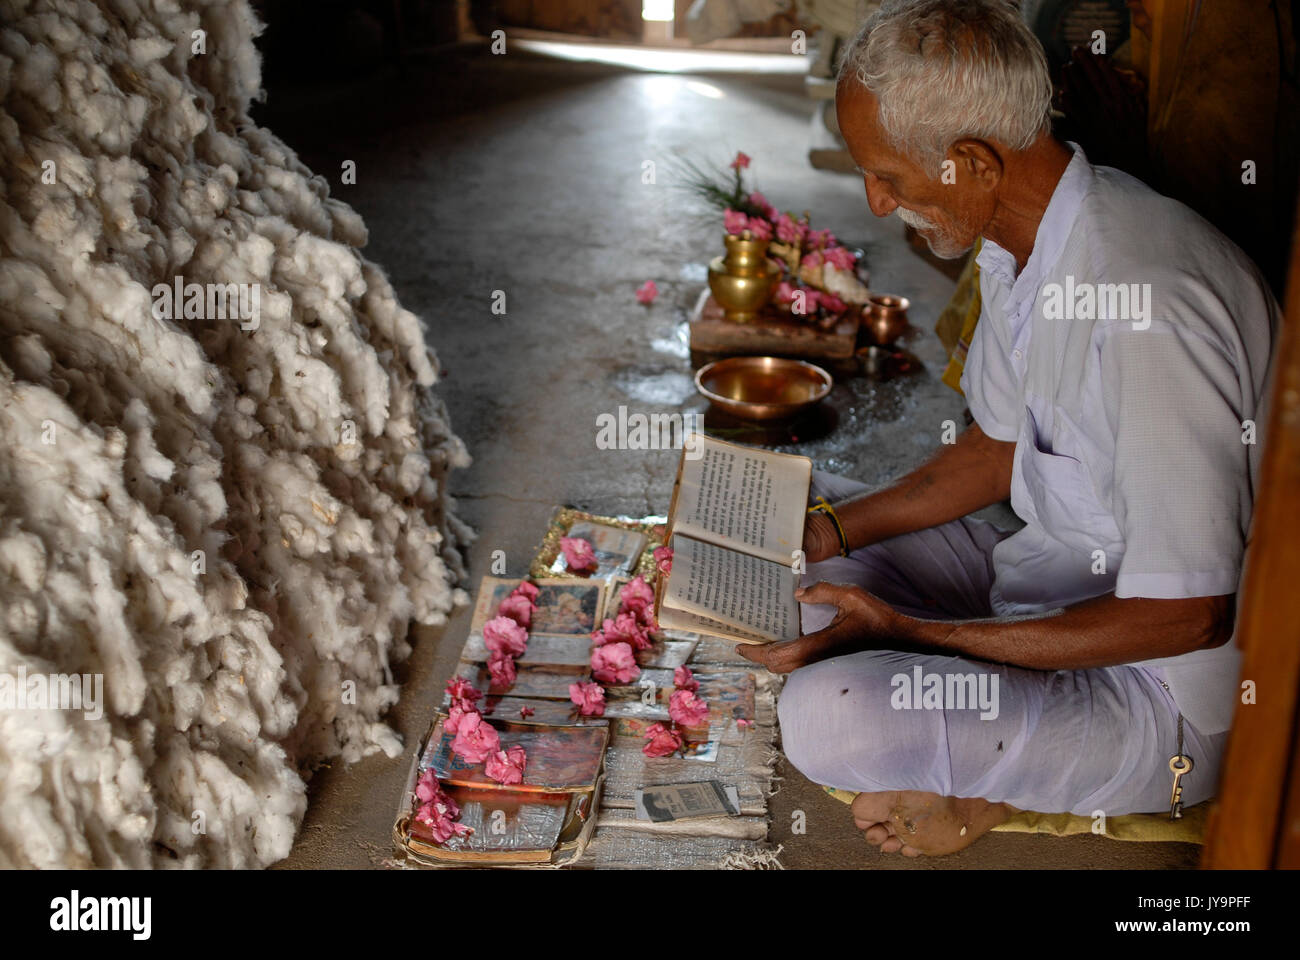 La India de Madhya Pradesh , proyecto de algodón orgánico bioRe en Kasrawad , algodón agricultor tener una oración al lado de su rendimiento de algodón en casa / INDIEN Madhya Pradesh , bioRe Projekt fuer biodynamischen Anbau von Baumwolle en Kasrawad, Baumwollfarmer bei einem Gebet neben cerquero Baumwollernte zu Hause Foto de stock